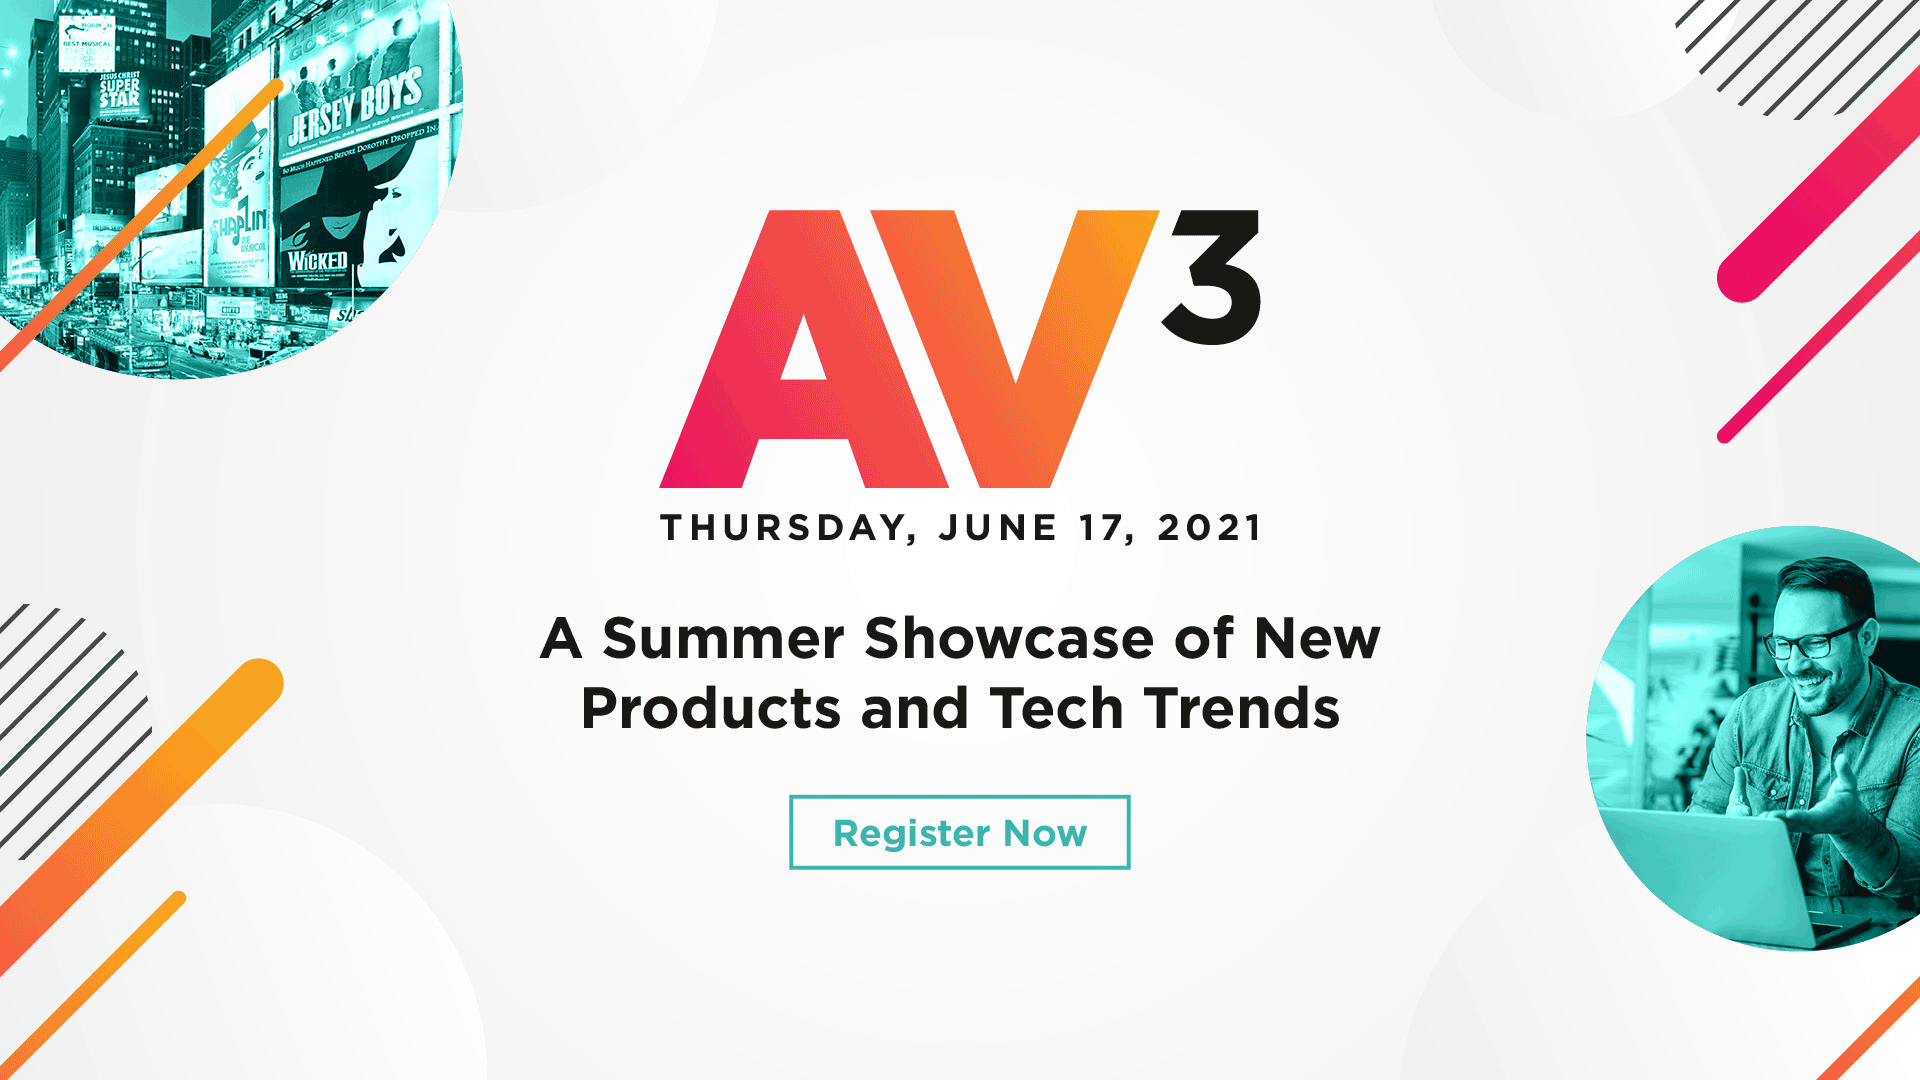 Register for AV3 on June 17